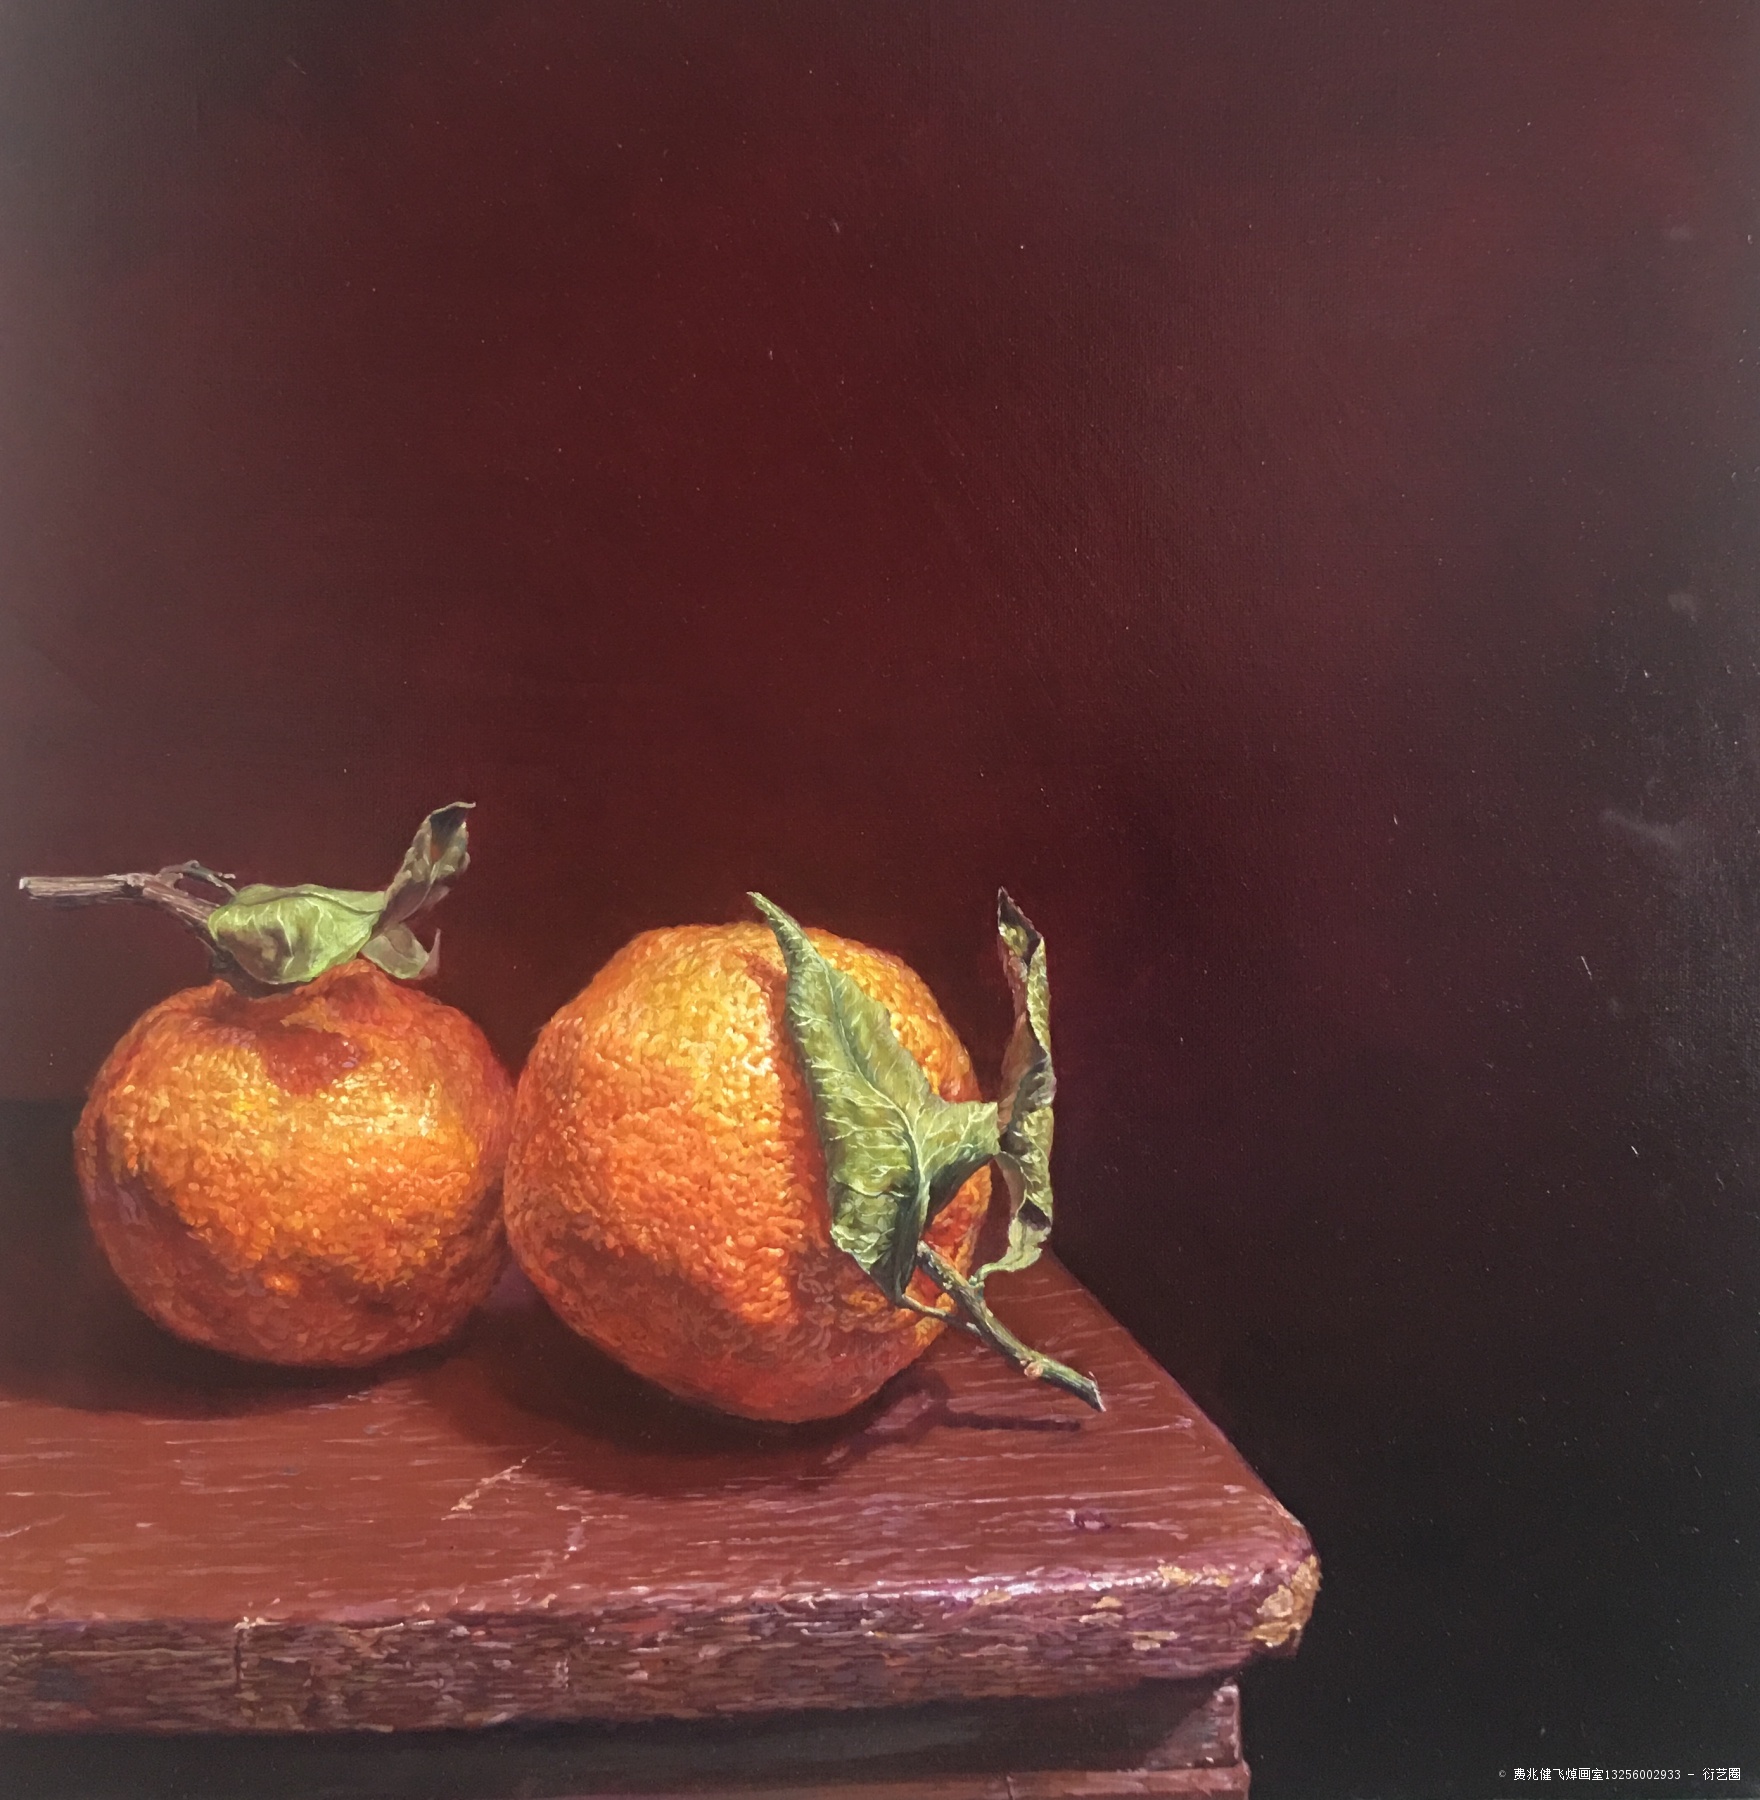 丑橘,费兆健飞焯画室13256002933, 2020年布面油画 